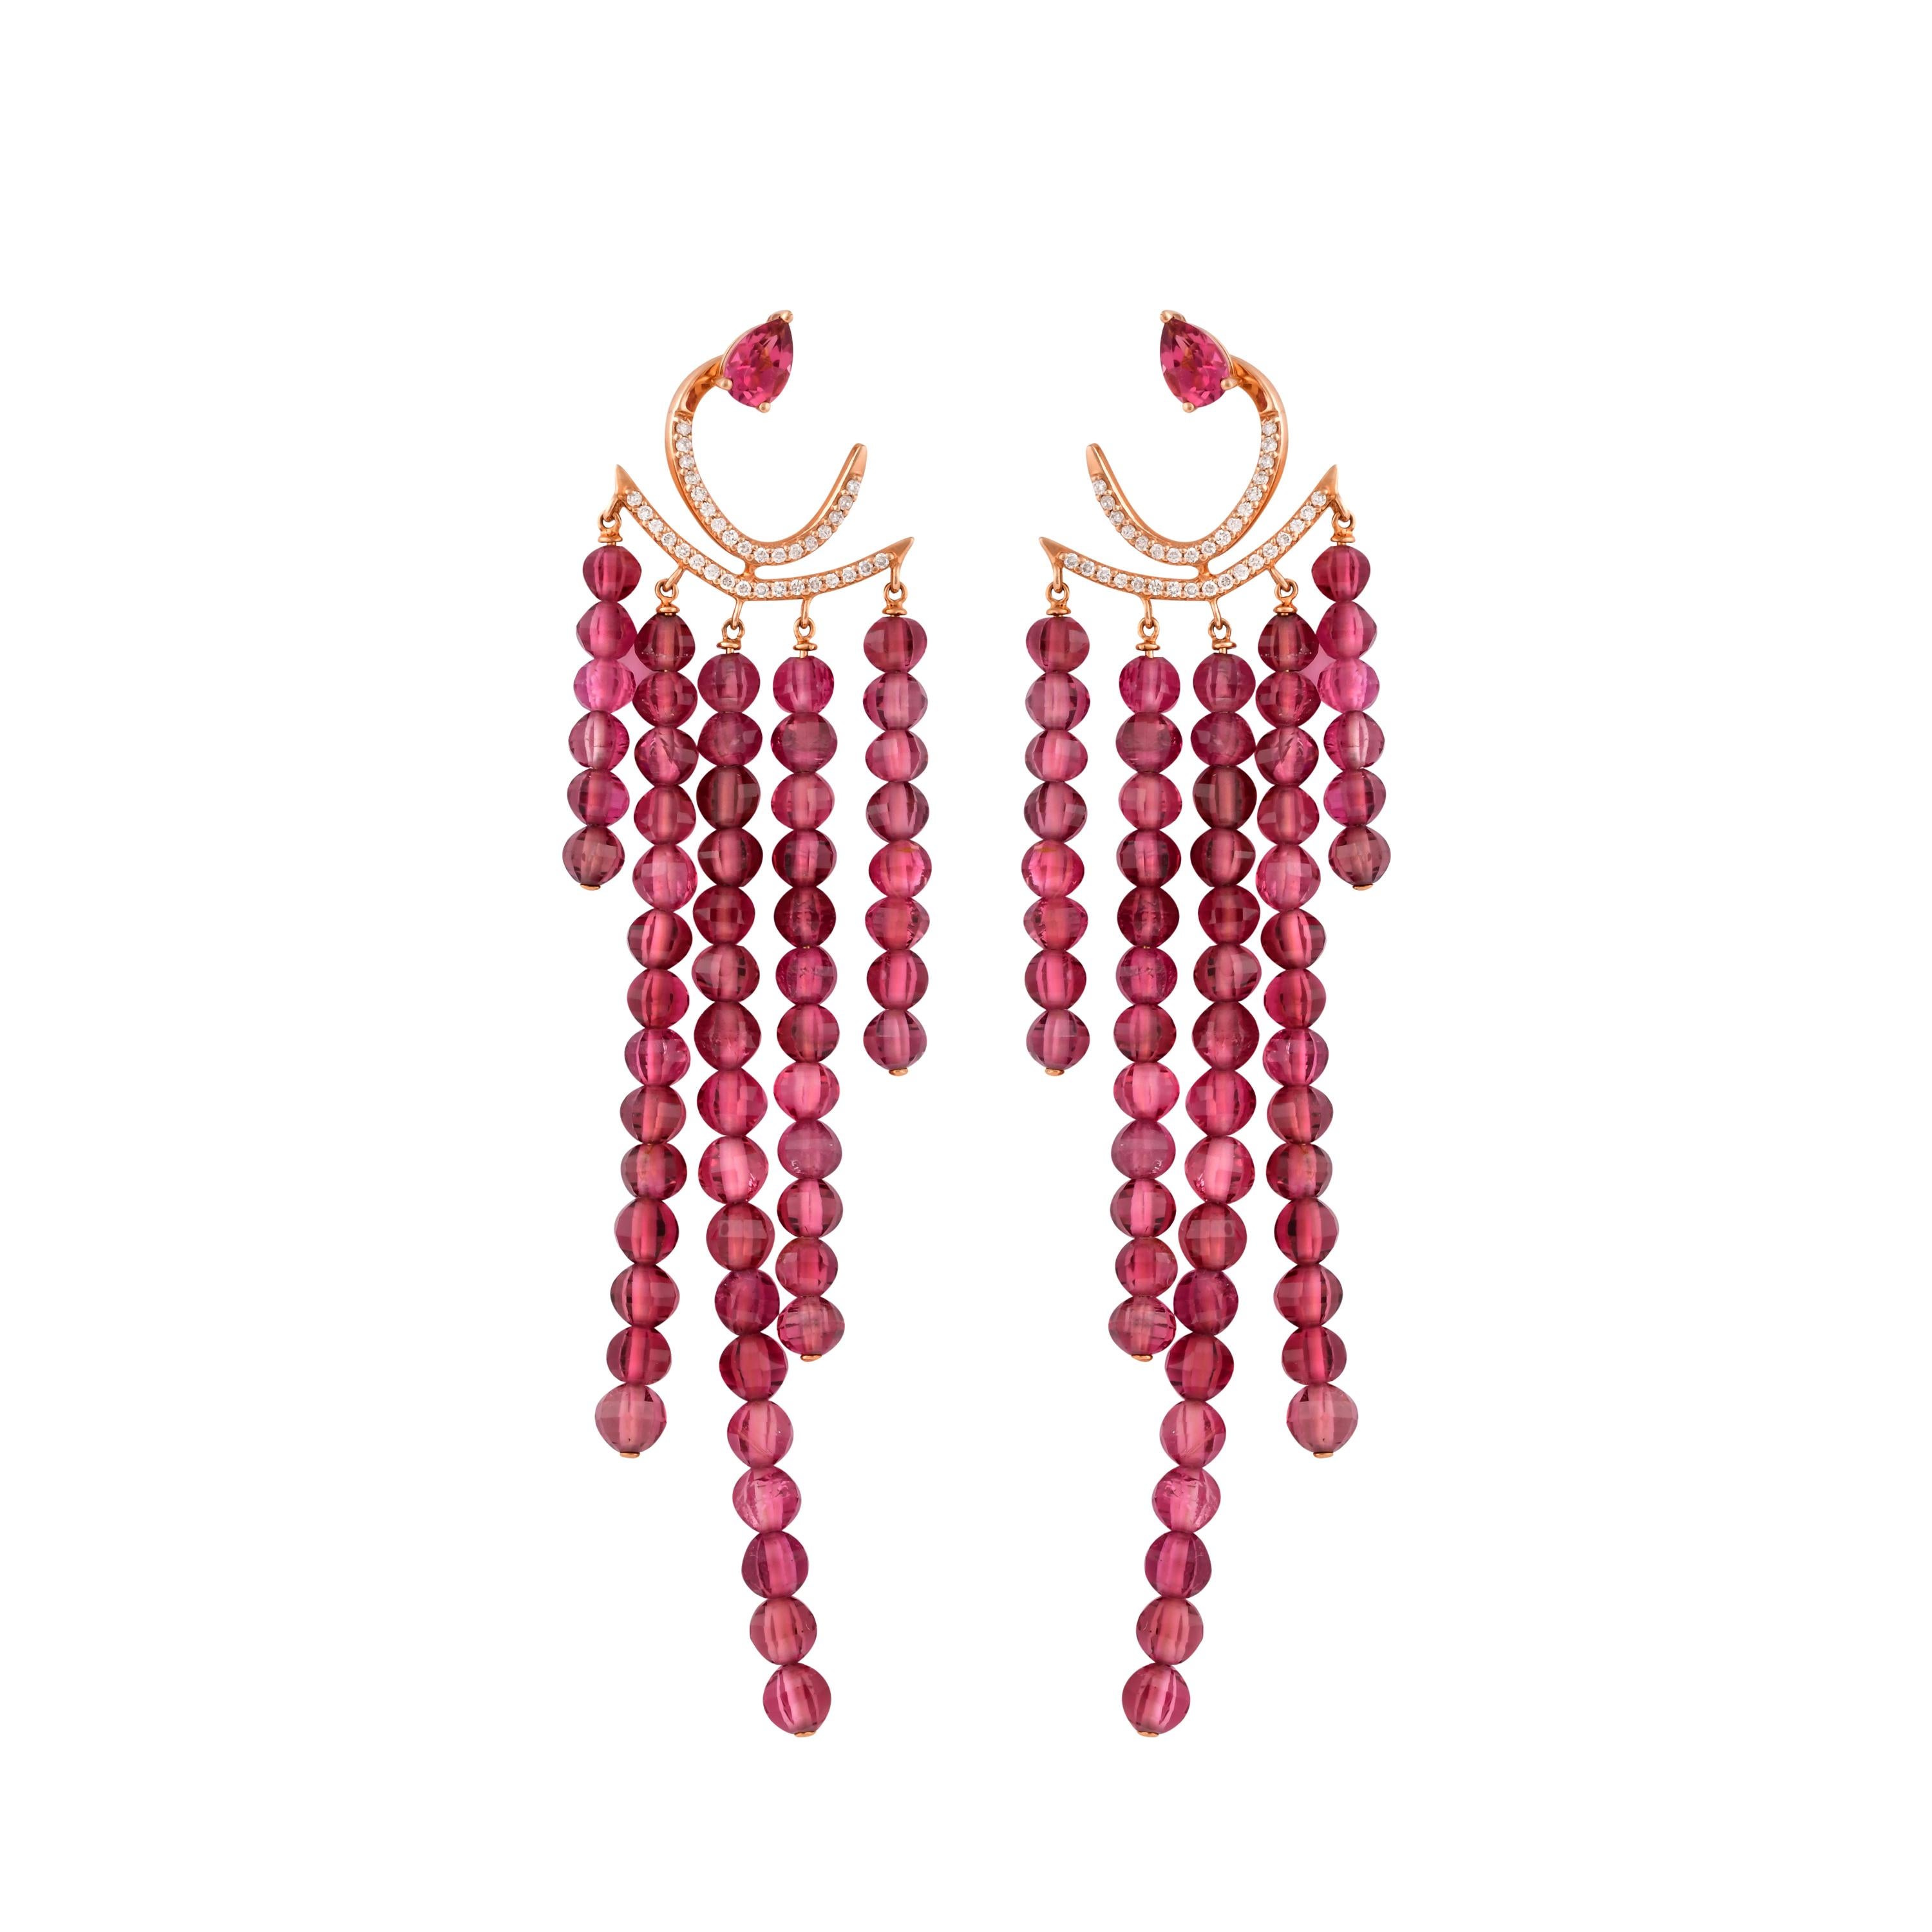 Une collection exclusive de boucles d'oreilles design et uniques de Sunita Nahata Fine Design. 

Boucles d'oreilles avec tourmaline rose en or rose 14 carats.

Tourmaline rose : 0,78 carat, taille 6X4, forme de poire.
Tourmaline rose : 55,83 carat,